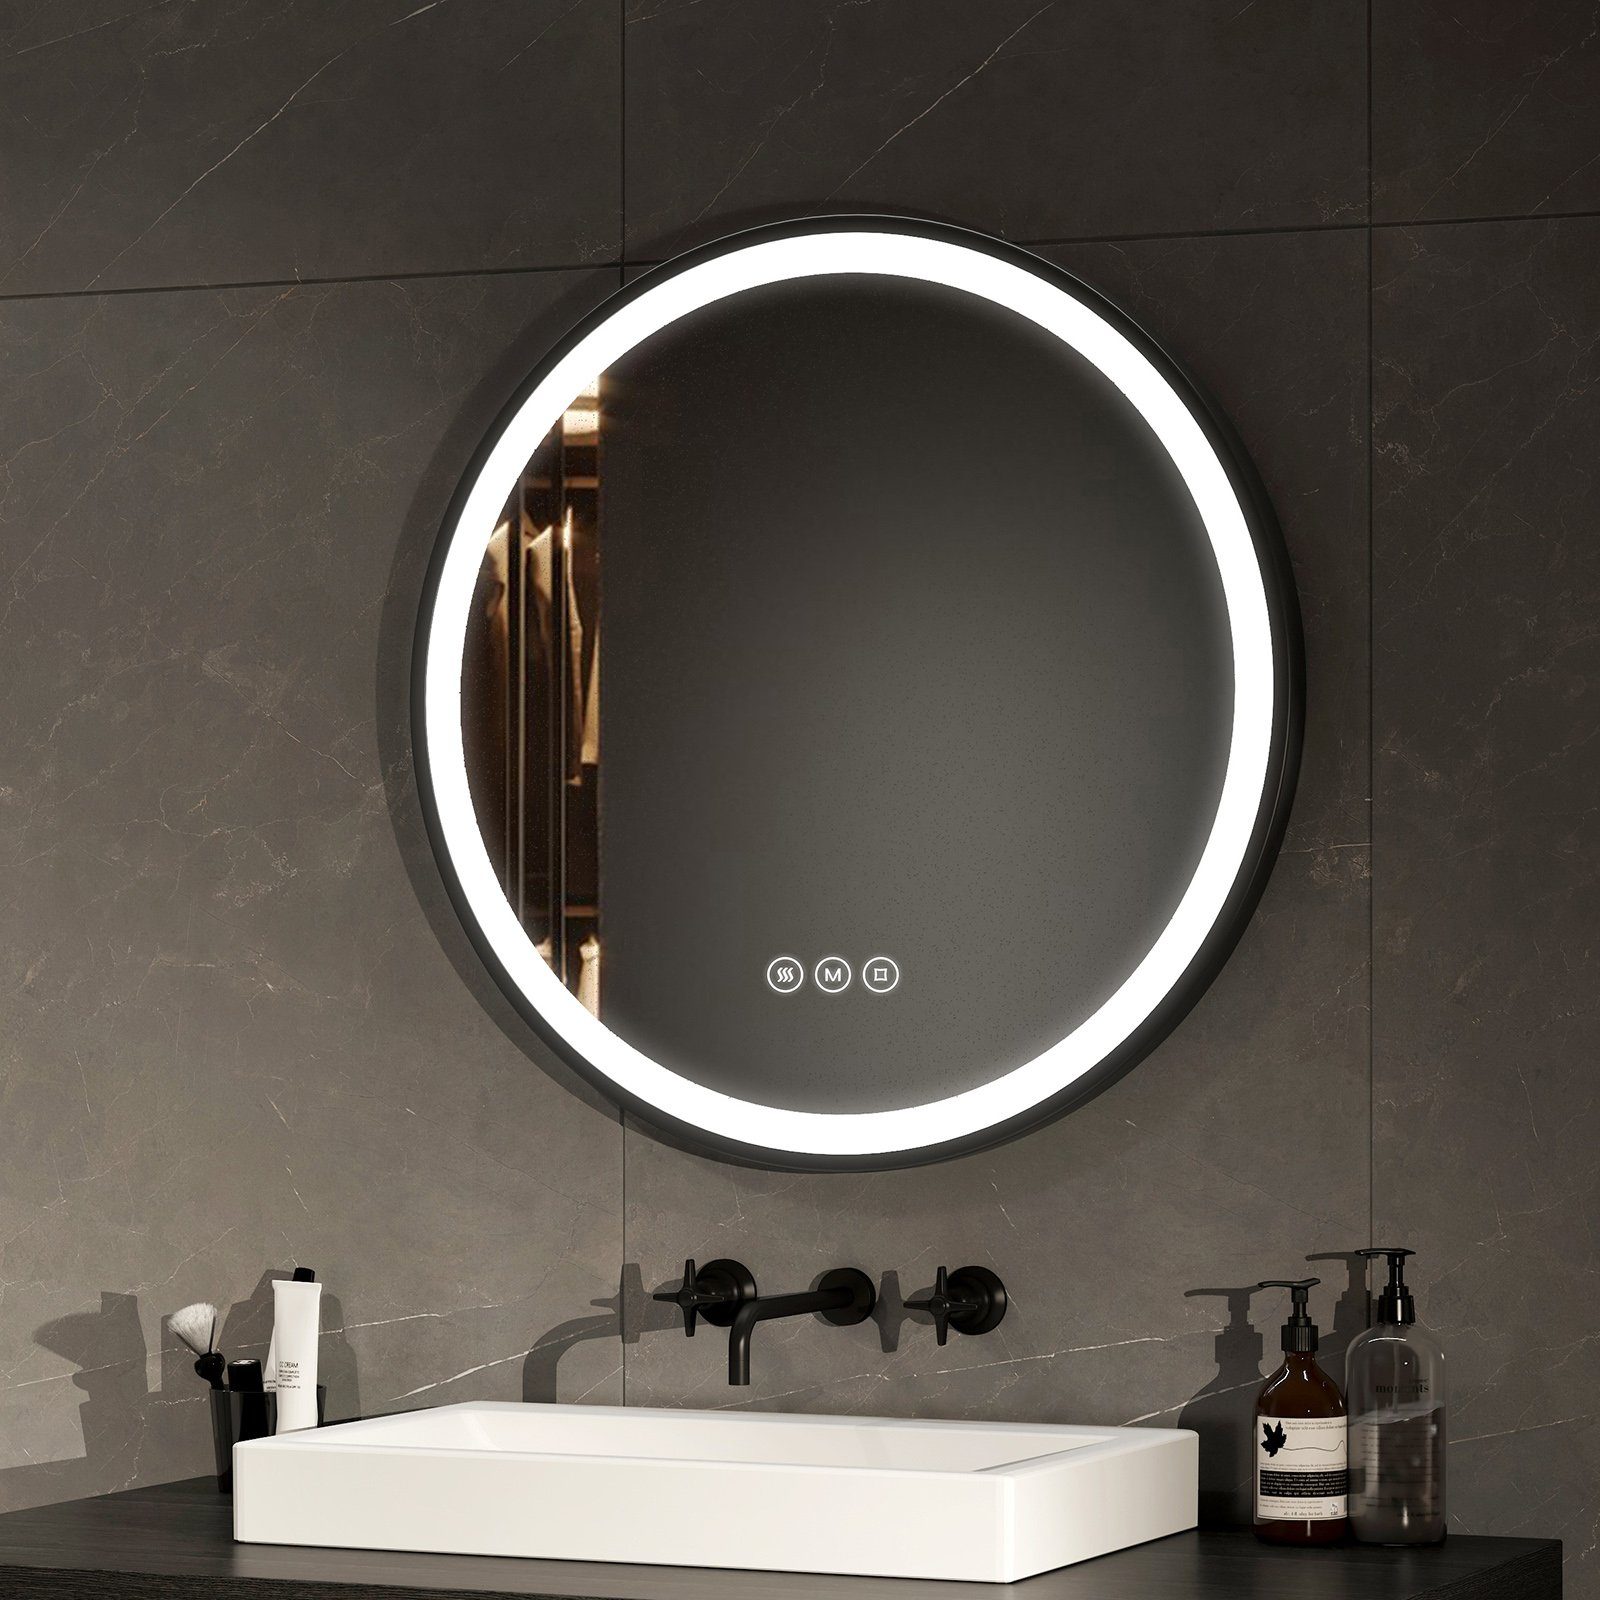 EMKE Badspiegel Antibeschlage Badezimmerspiegel mit schwarzem Rahmen, 3 Lichtfarben Dimmbar, Memory-Funktion Φ 50-80 cm